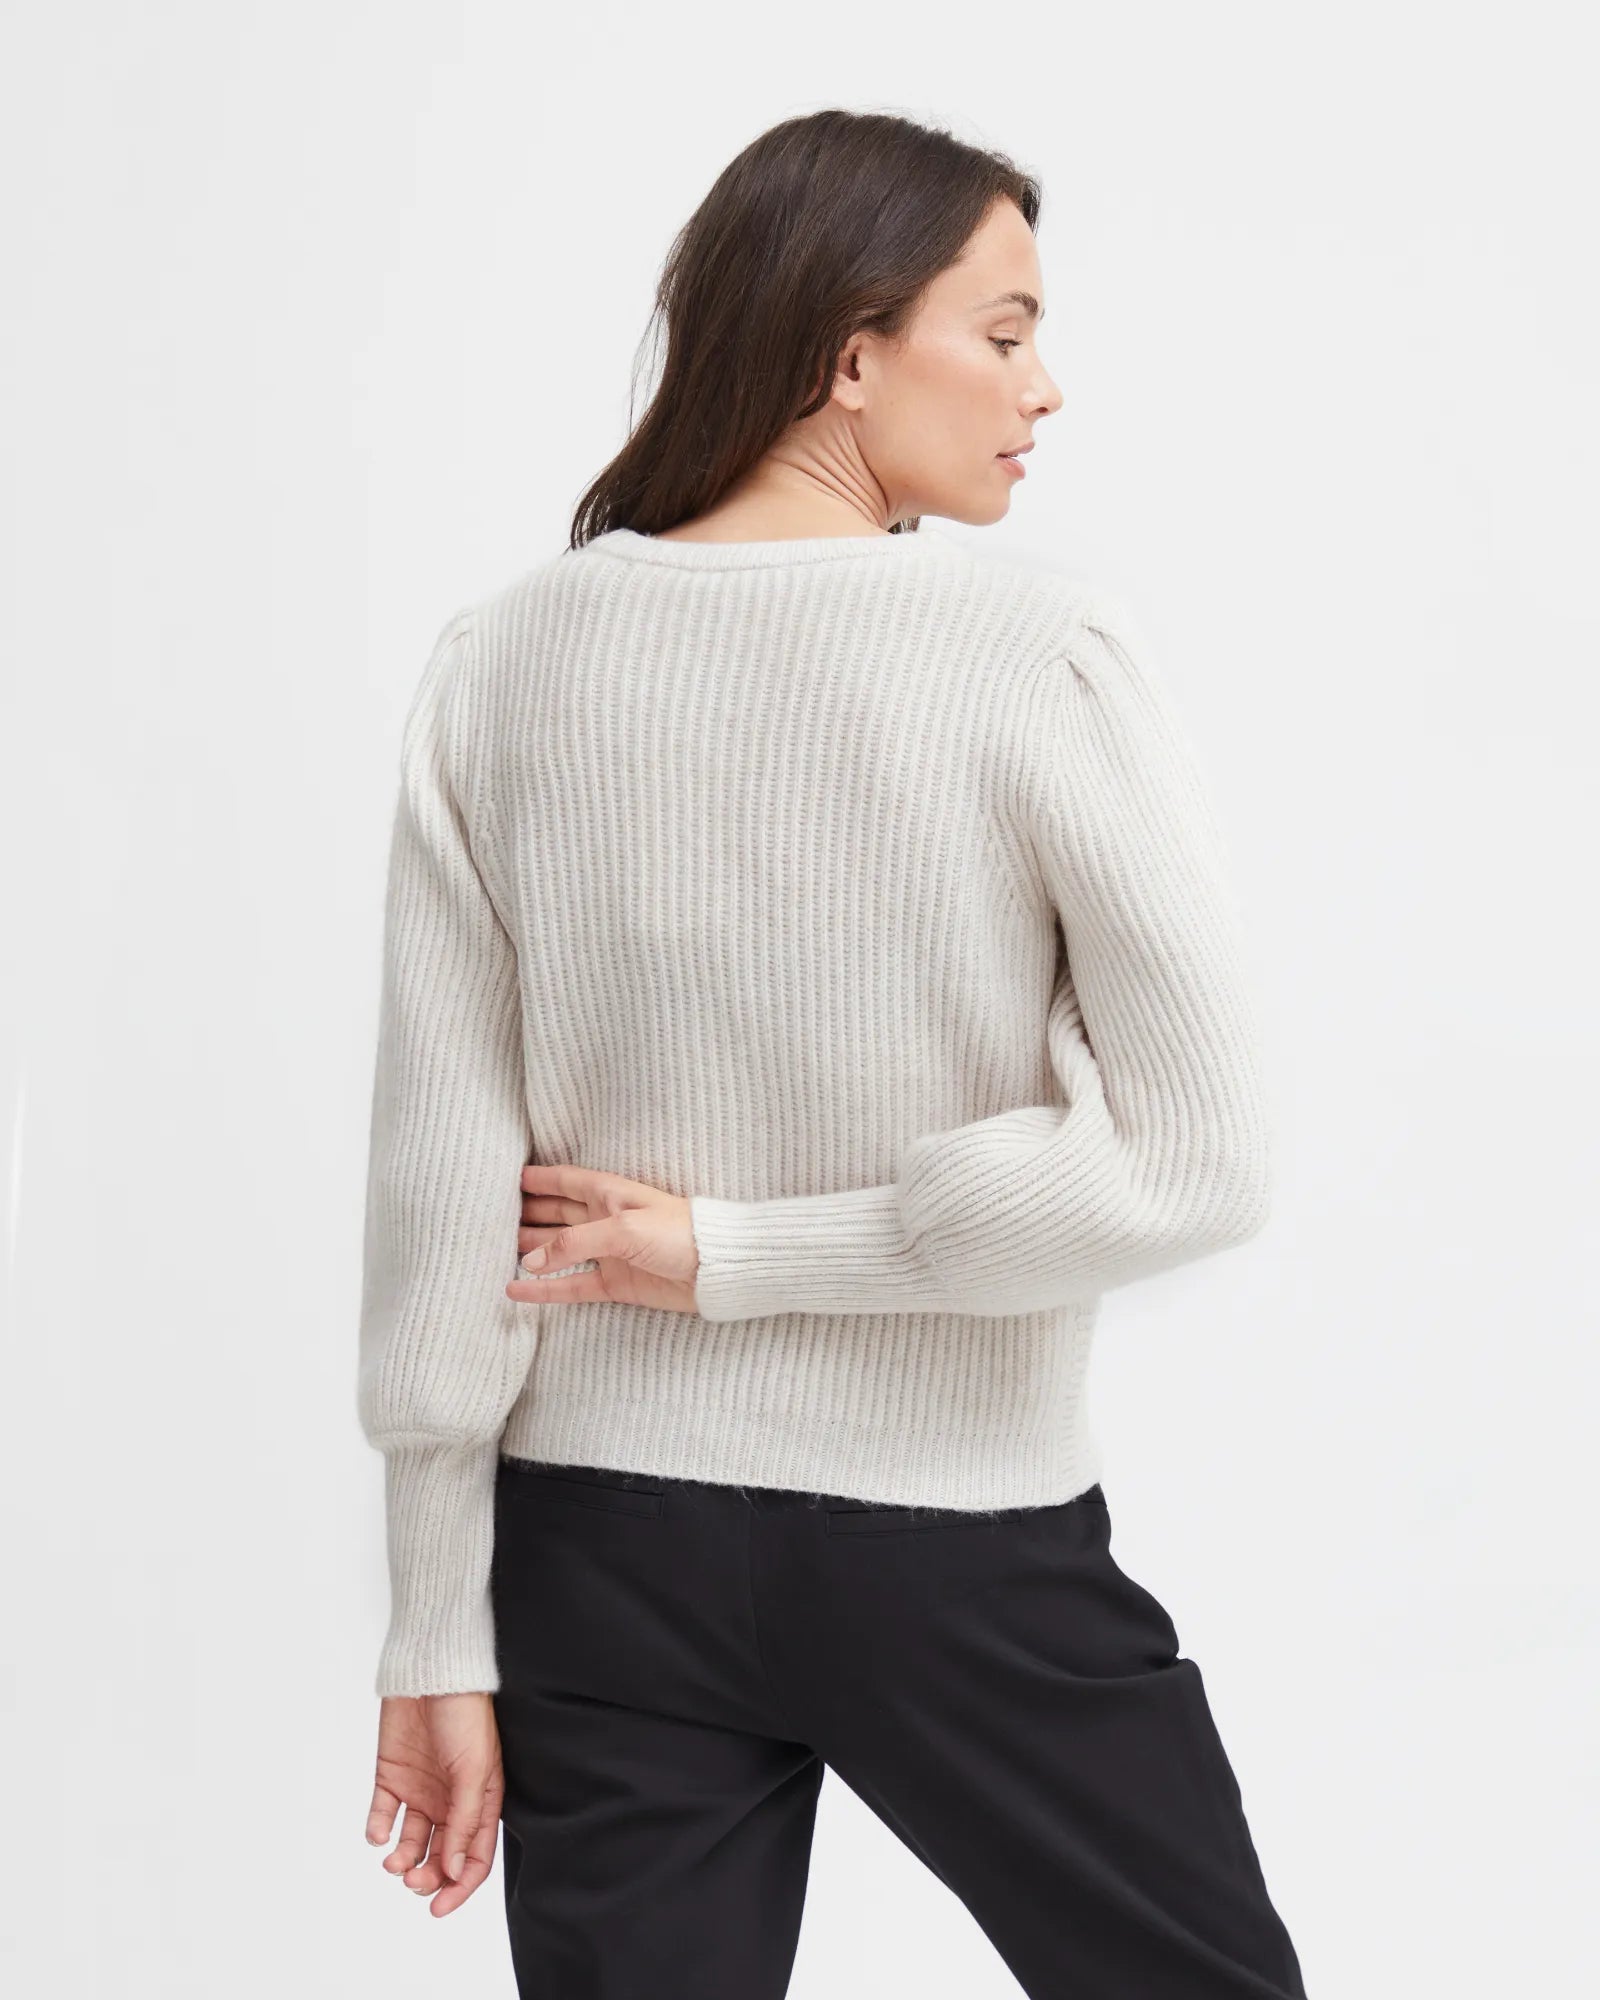 Knitted – Elna Beacon Fransa Melange - Pullover Limestone